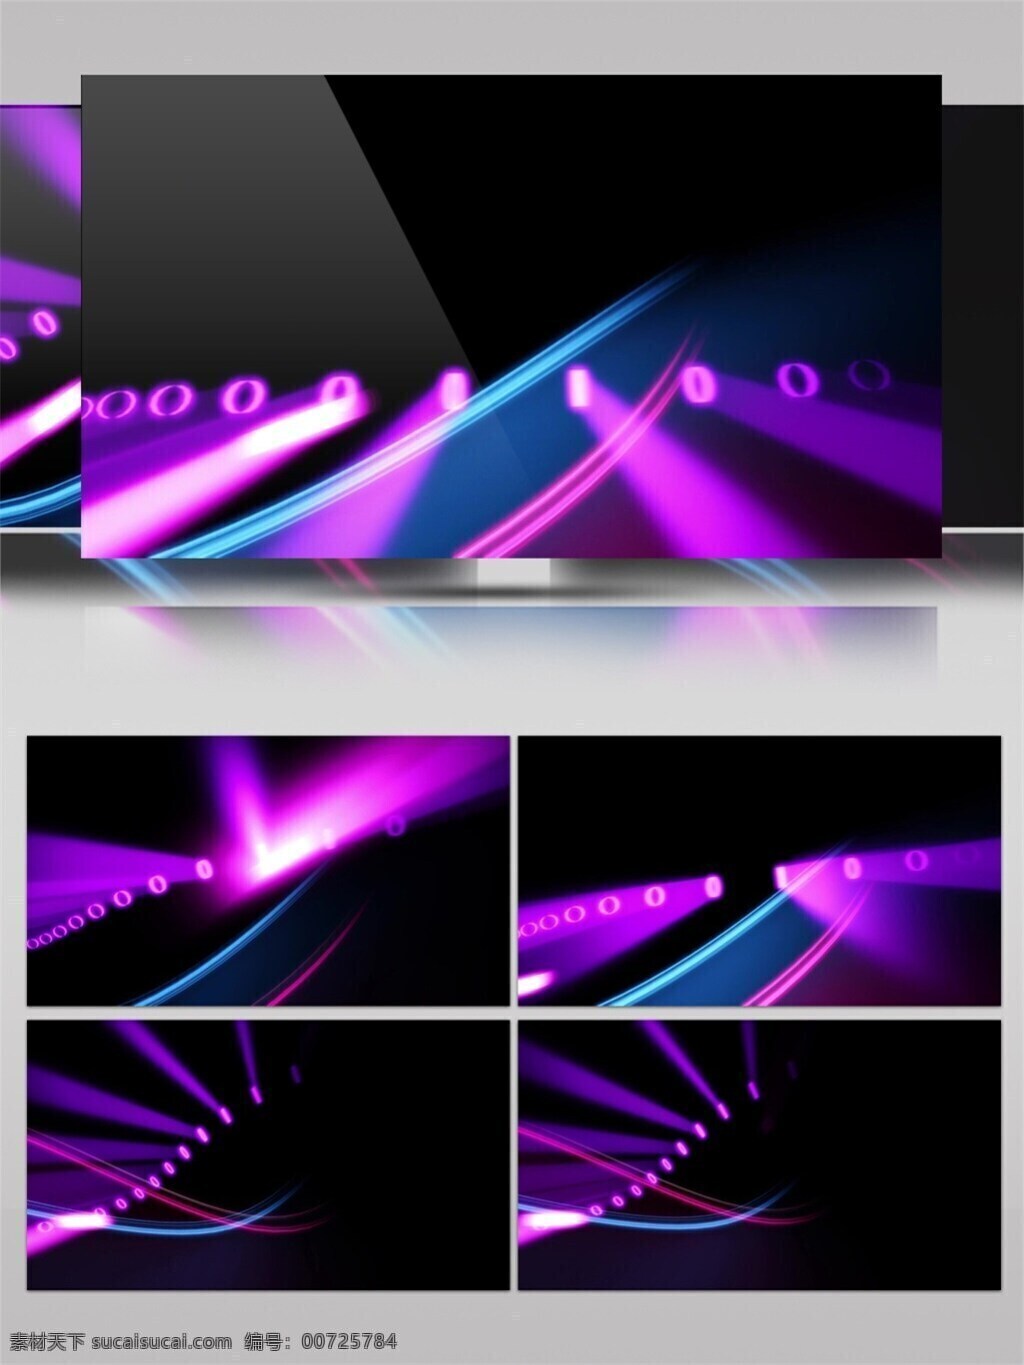 紫色 光束 飞碟 视频 led 闪烁 灯光 节目灯光 视觉享受 唯美背景素材 舞台背景素材 宇宙